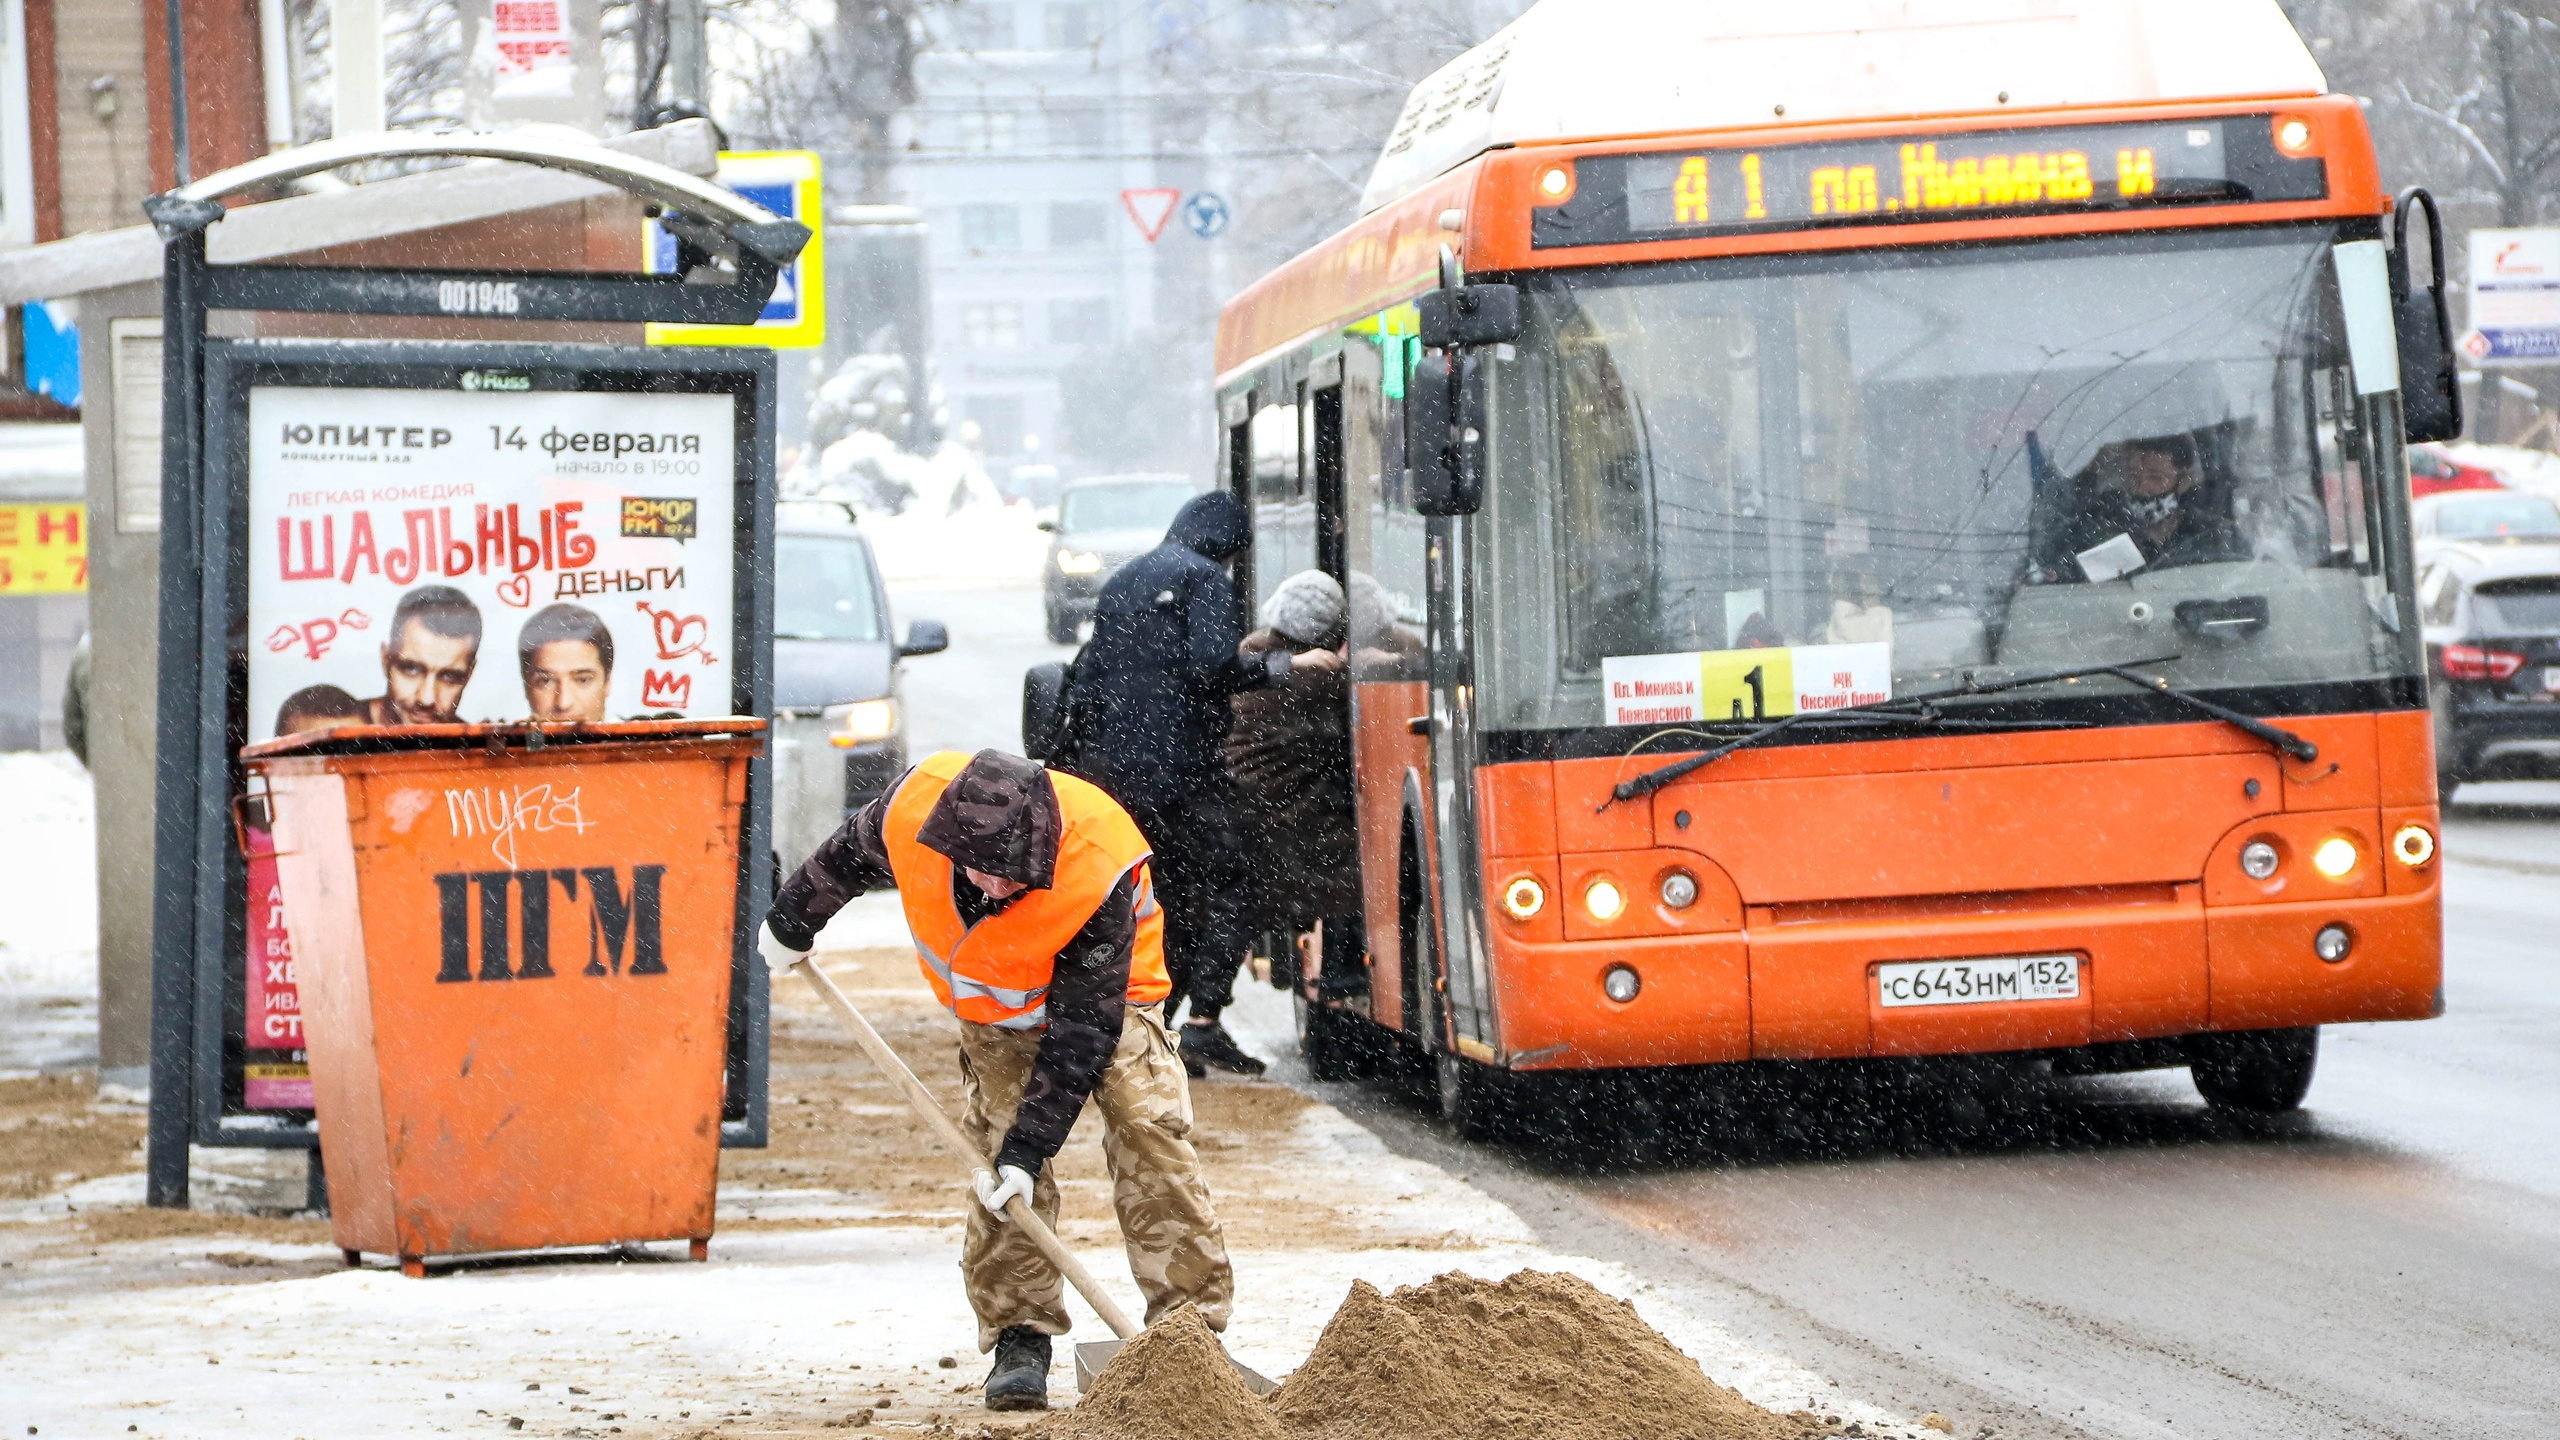 «Токсичный удар кулаком». Чем посыпают улицы Нижнего Новгорода зимой и как это влияет на здоровье